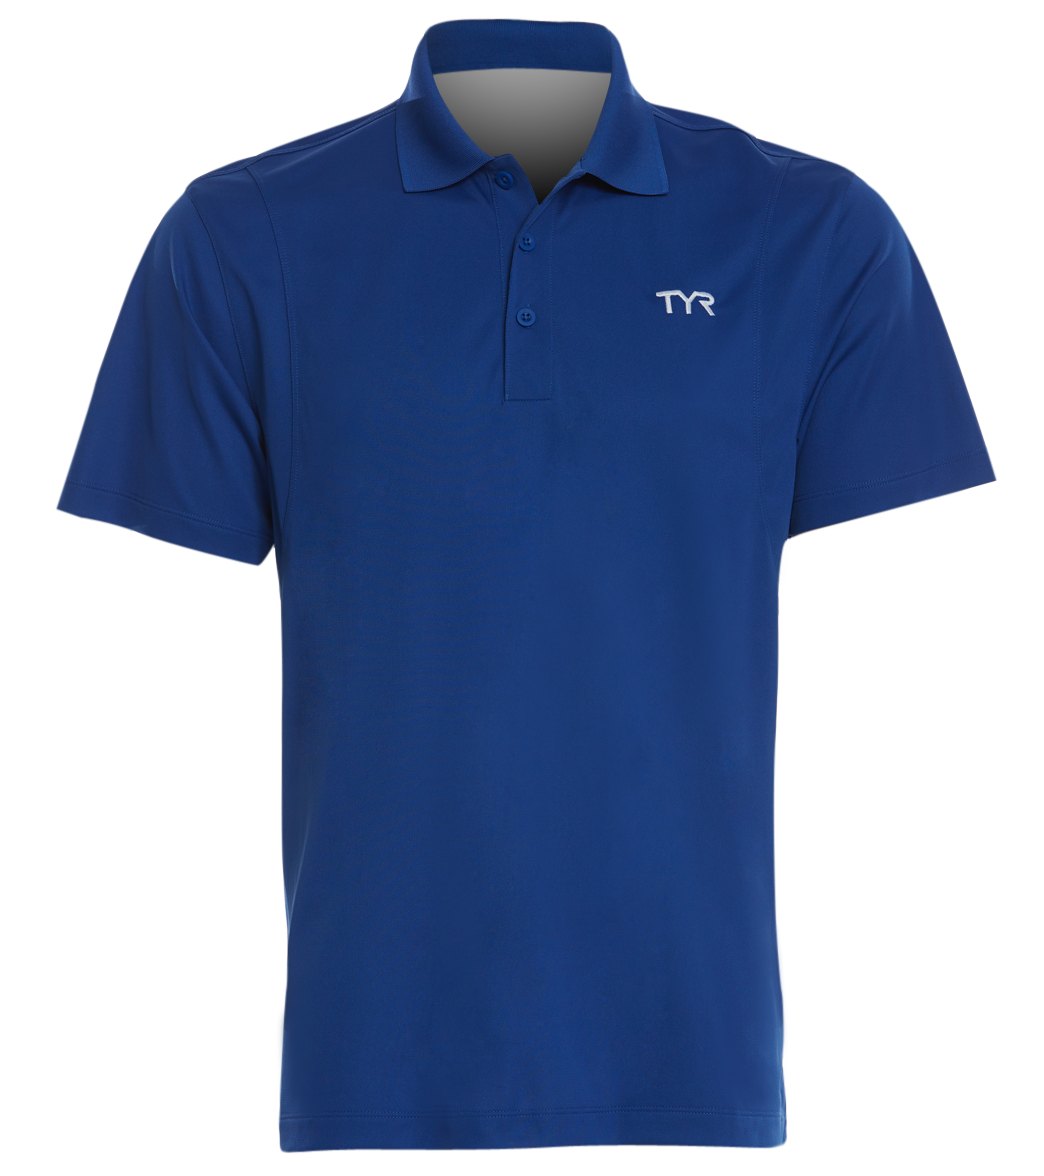 TYR Men's Alliance Tech Polo Shirt - Royal Medium Polyester - Swimoutlet.com